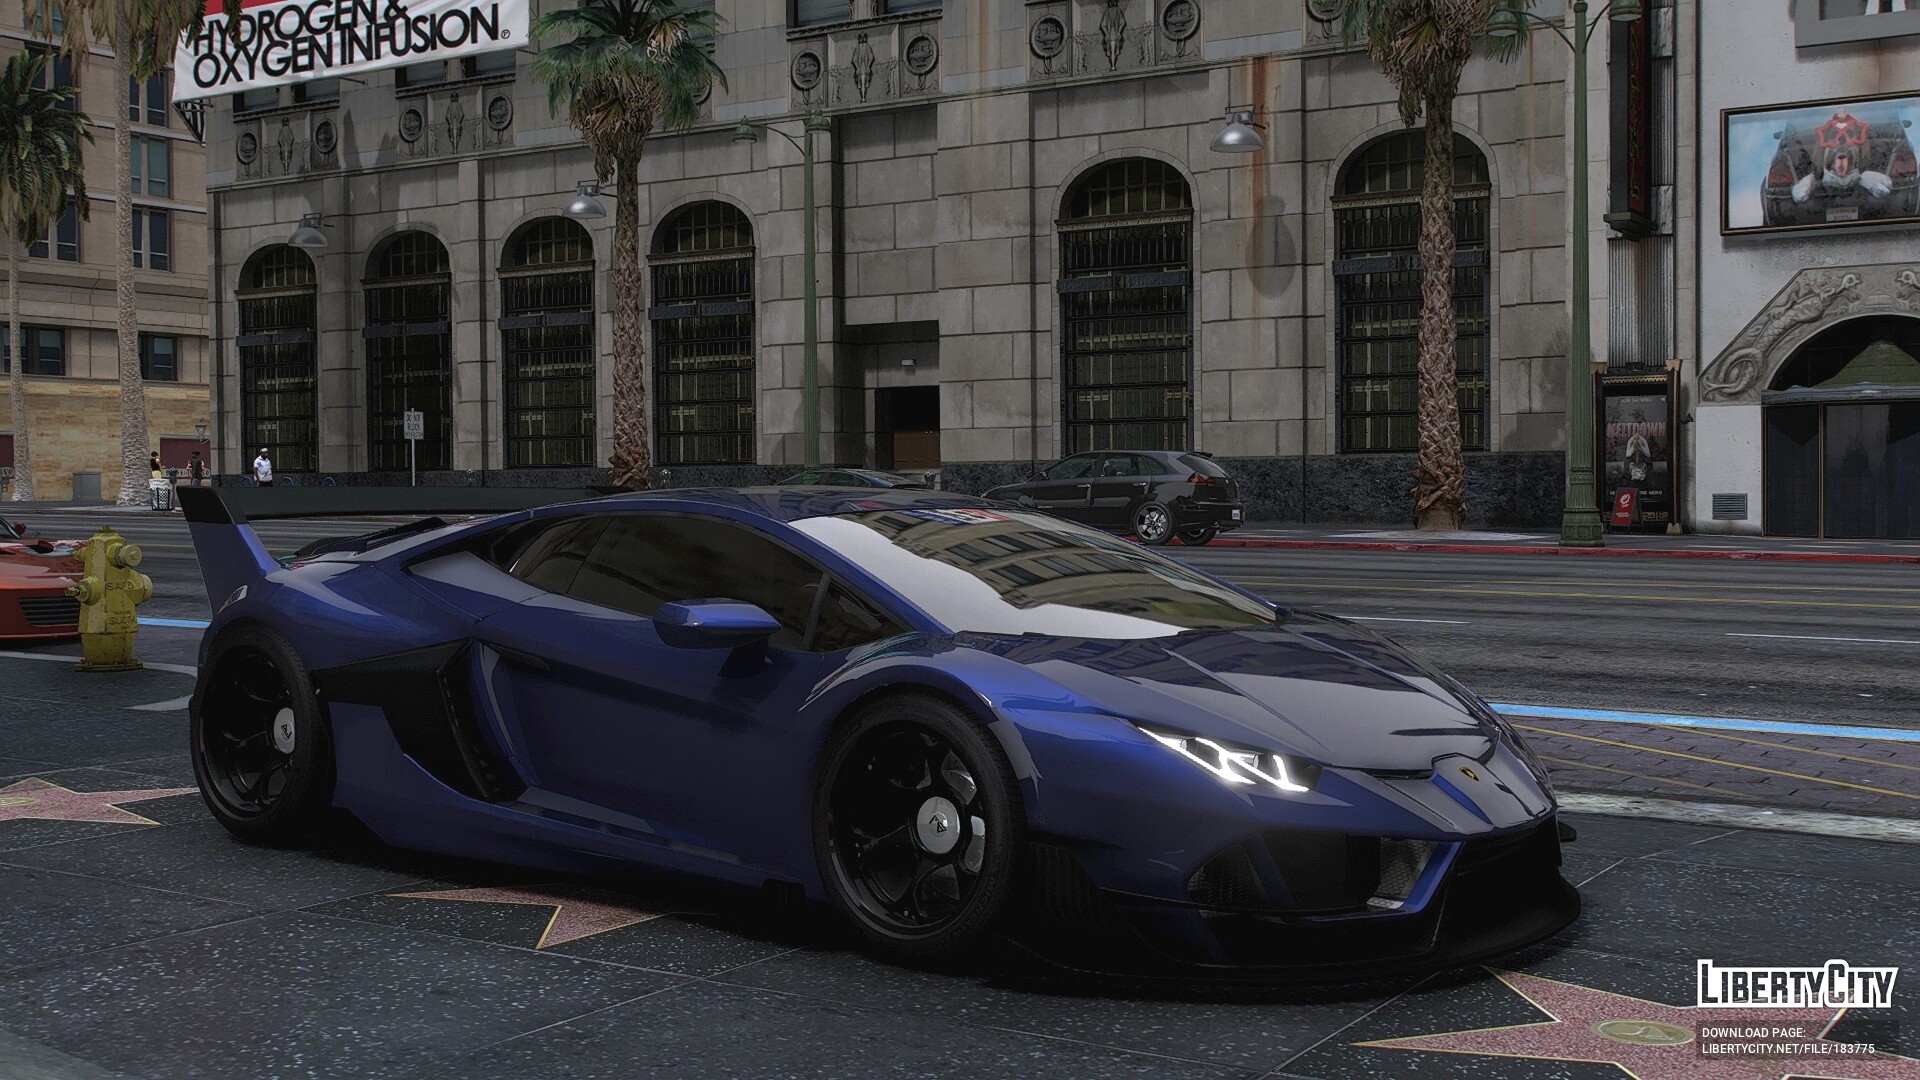 Download Lamborghini Huracan SP Designs for GTA 5